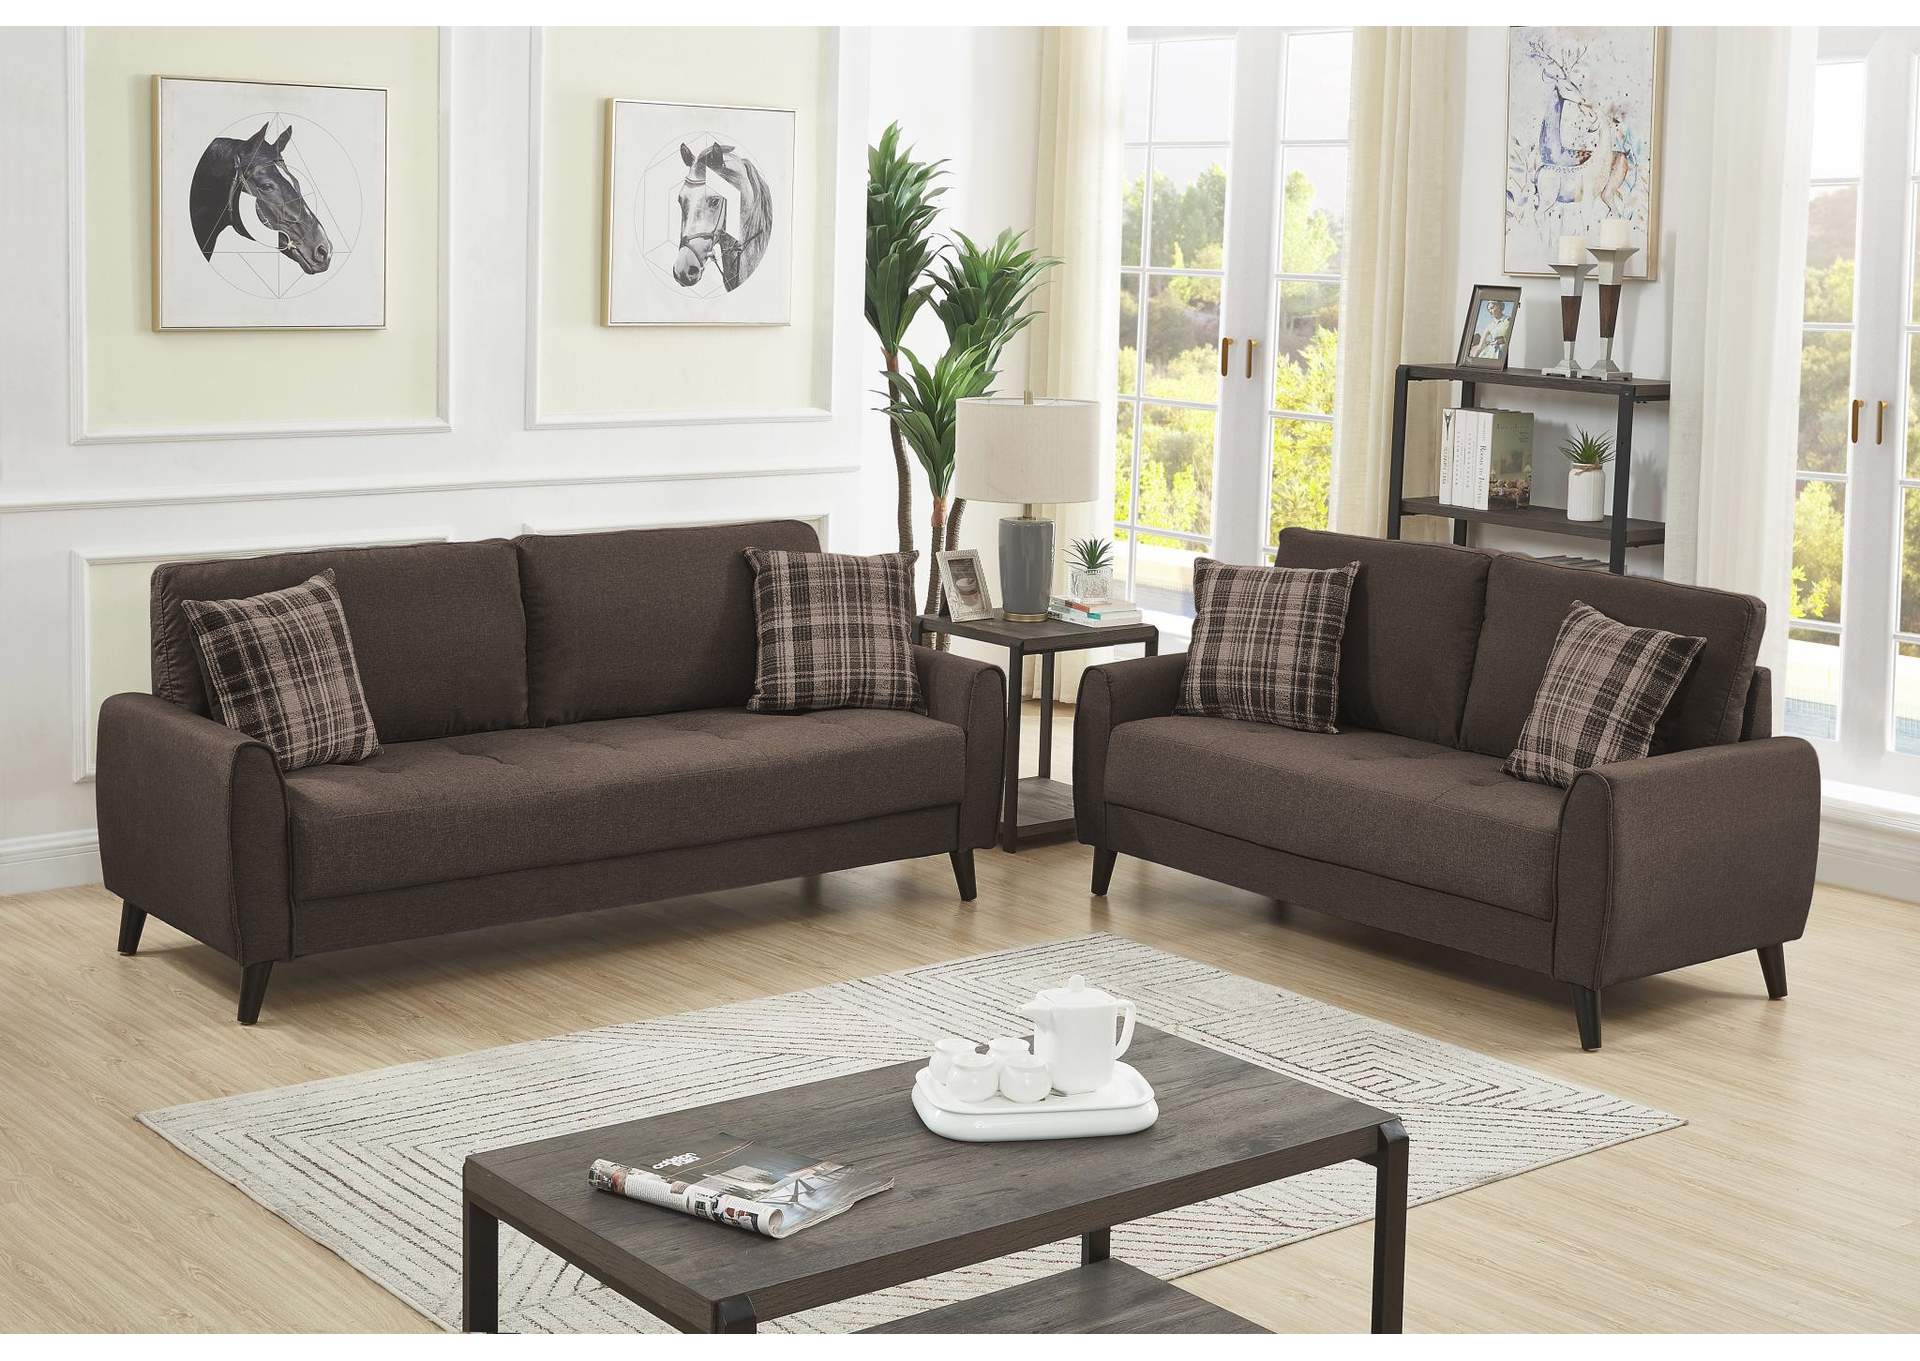 U2601 Sofa,Global Trading